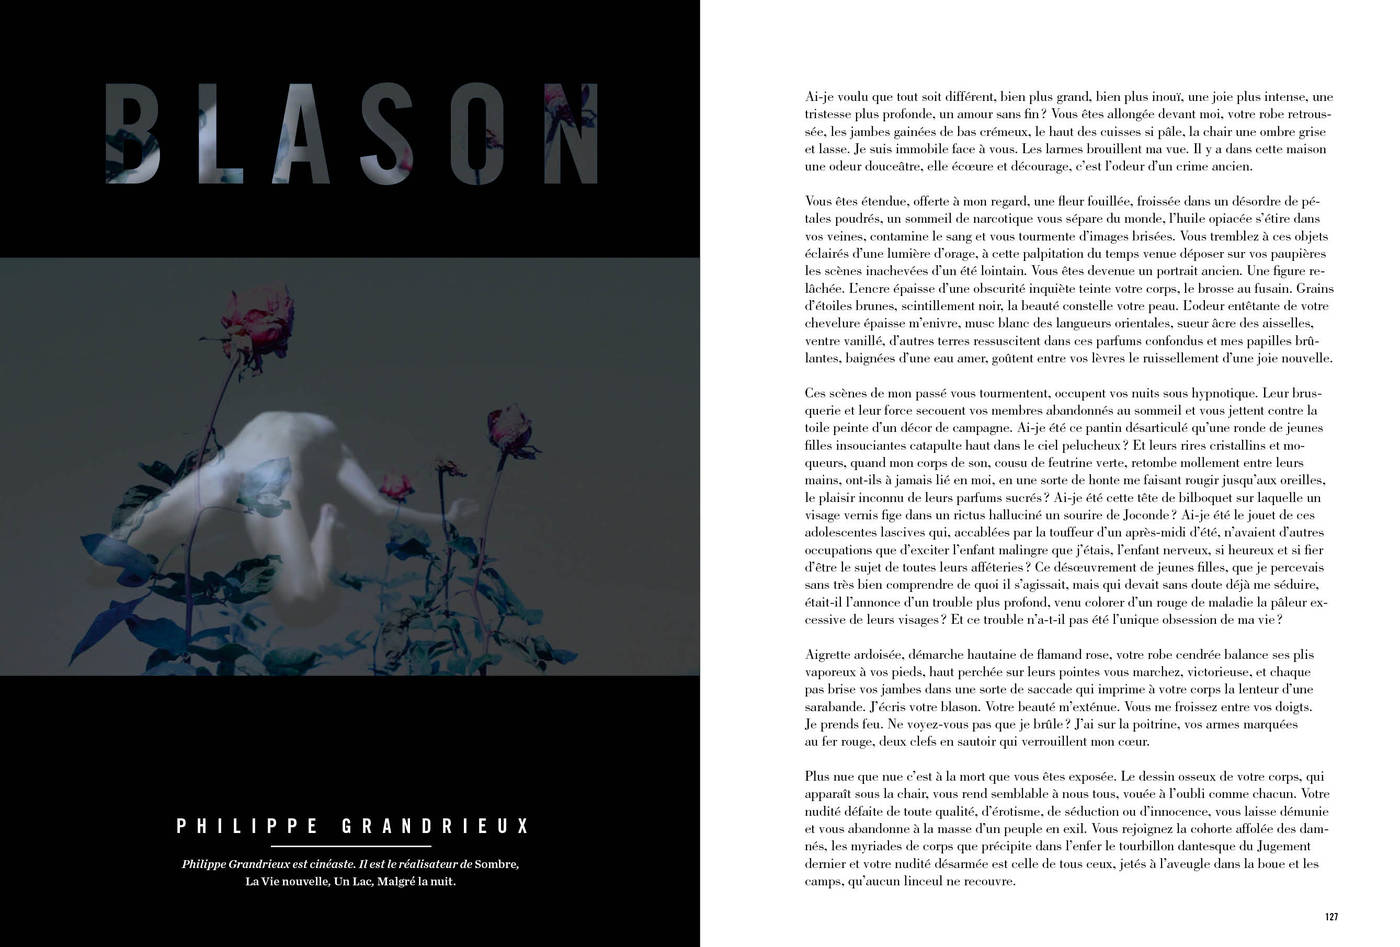 Texte et photographies de Philippe Grandrieux, Blason